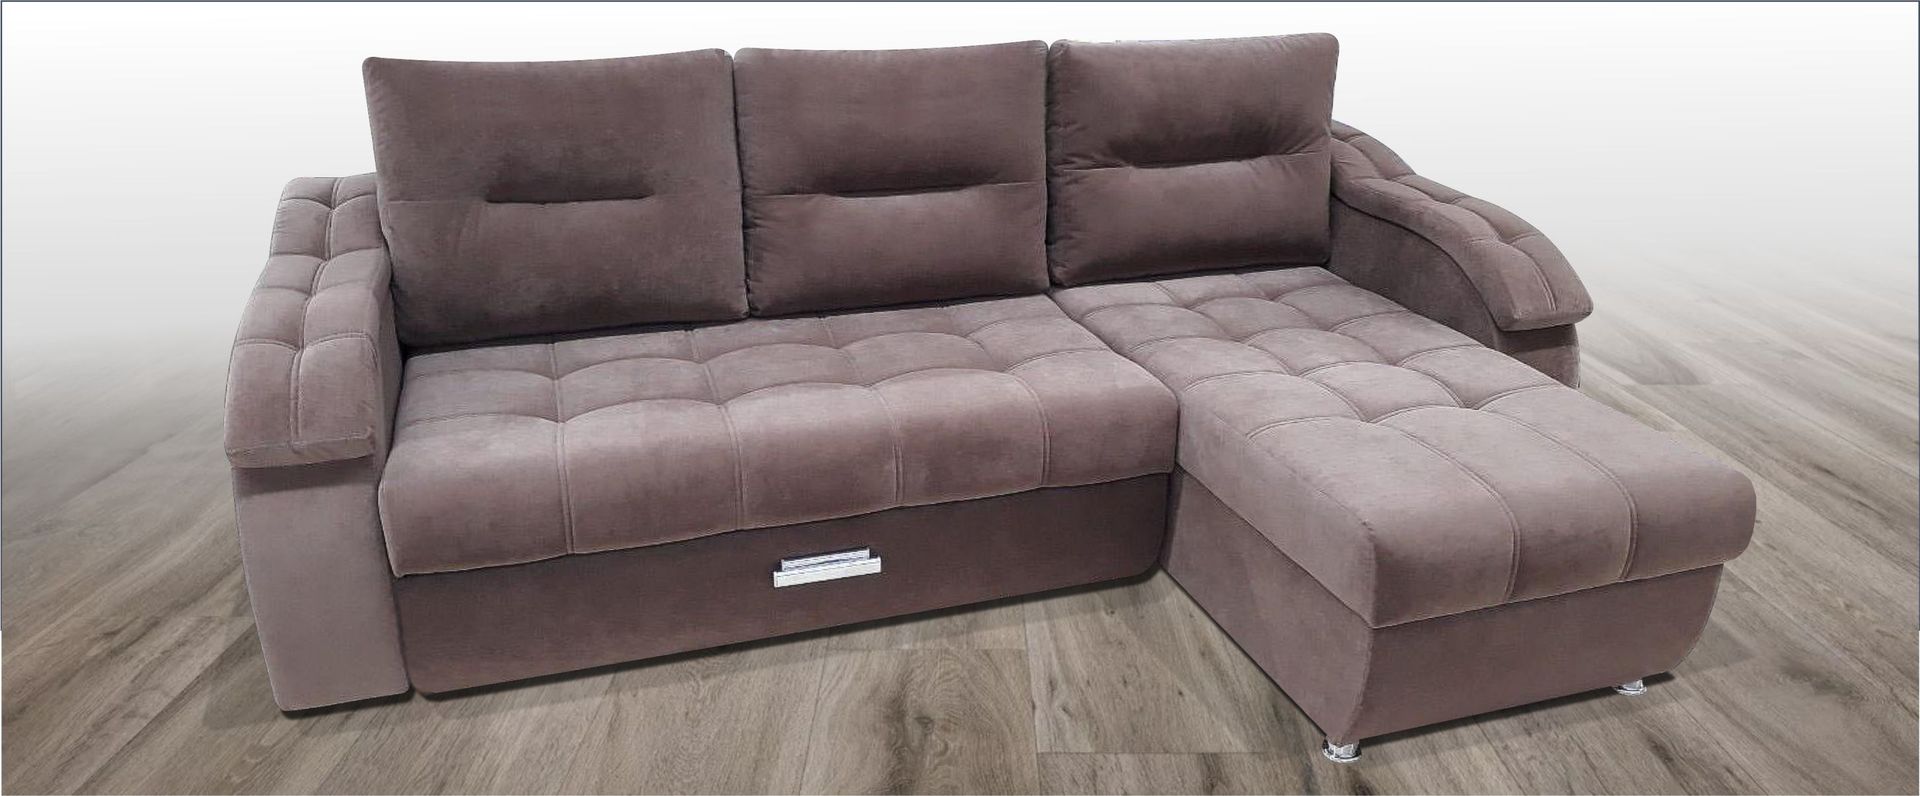 Комфорт Элит 3 Формула Уюта - Фабрика мягкой мебели в Ульяновске, диваны от производителя, оптом, мягкая мебель, кровати, кресла, диваны